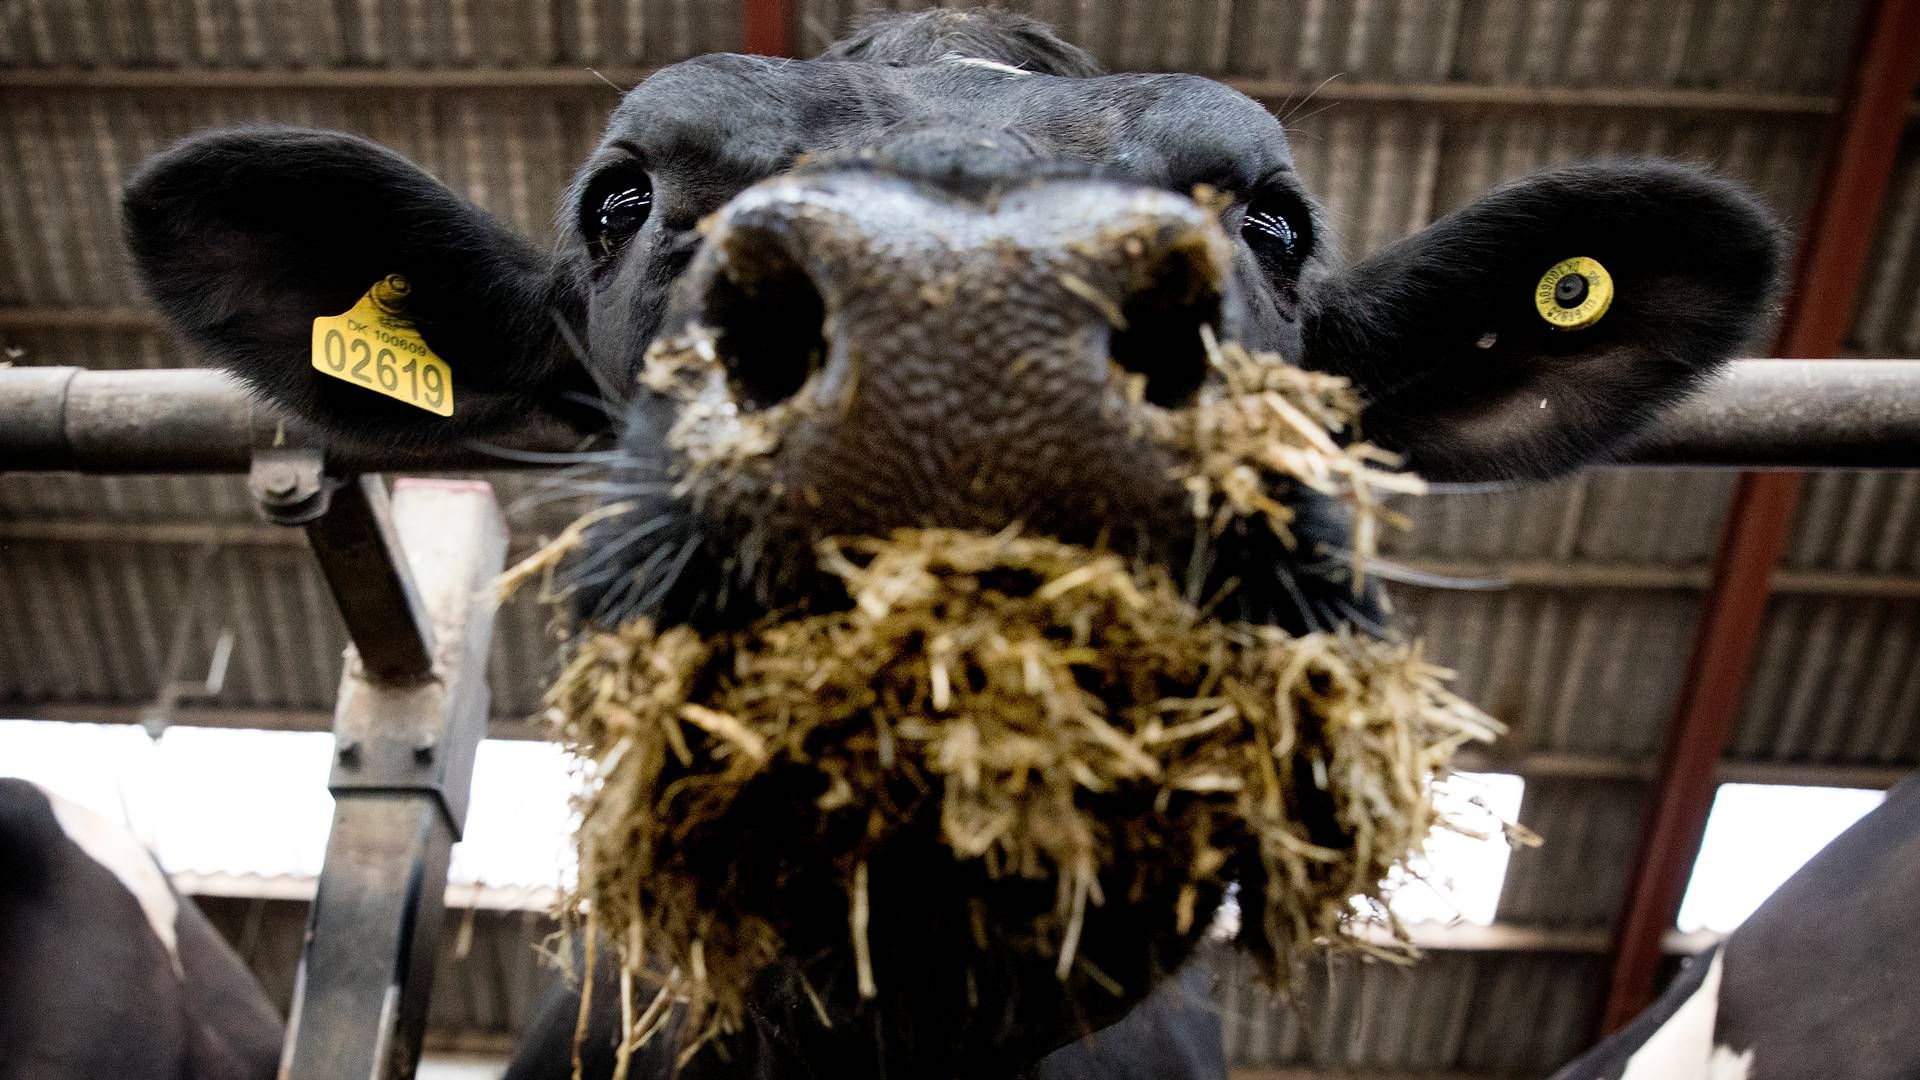 Med over en kvart million kreaturer, heraf omkring 112.000 malkekøer, er Ekoniva Ruslands største mælkeproduktion. Ejeren er tysk og har siden invasionen af Ukraine kæmpet for at holde sammen på sin virksomhed. | Foto: Finn Frandsen